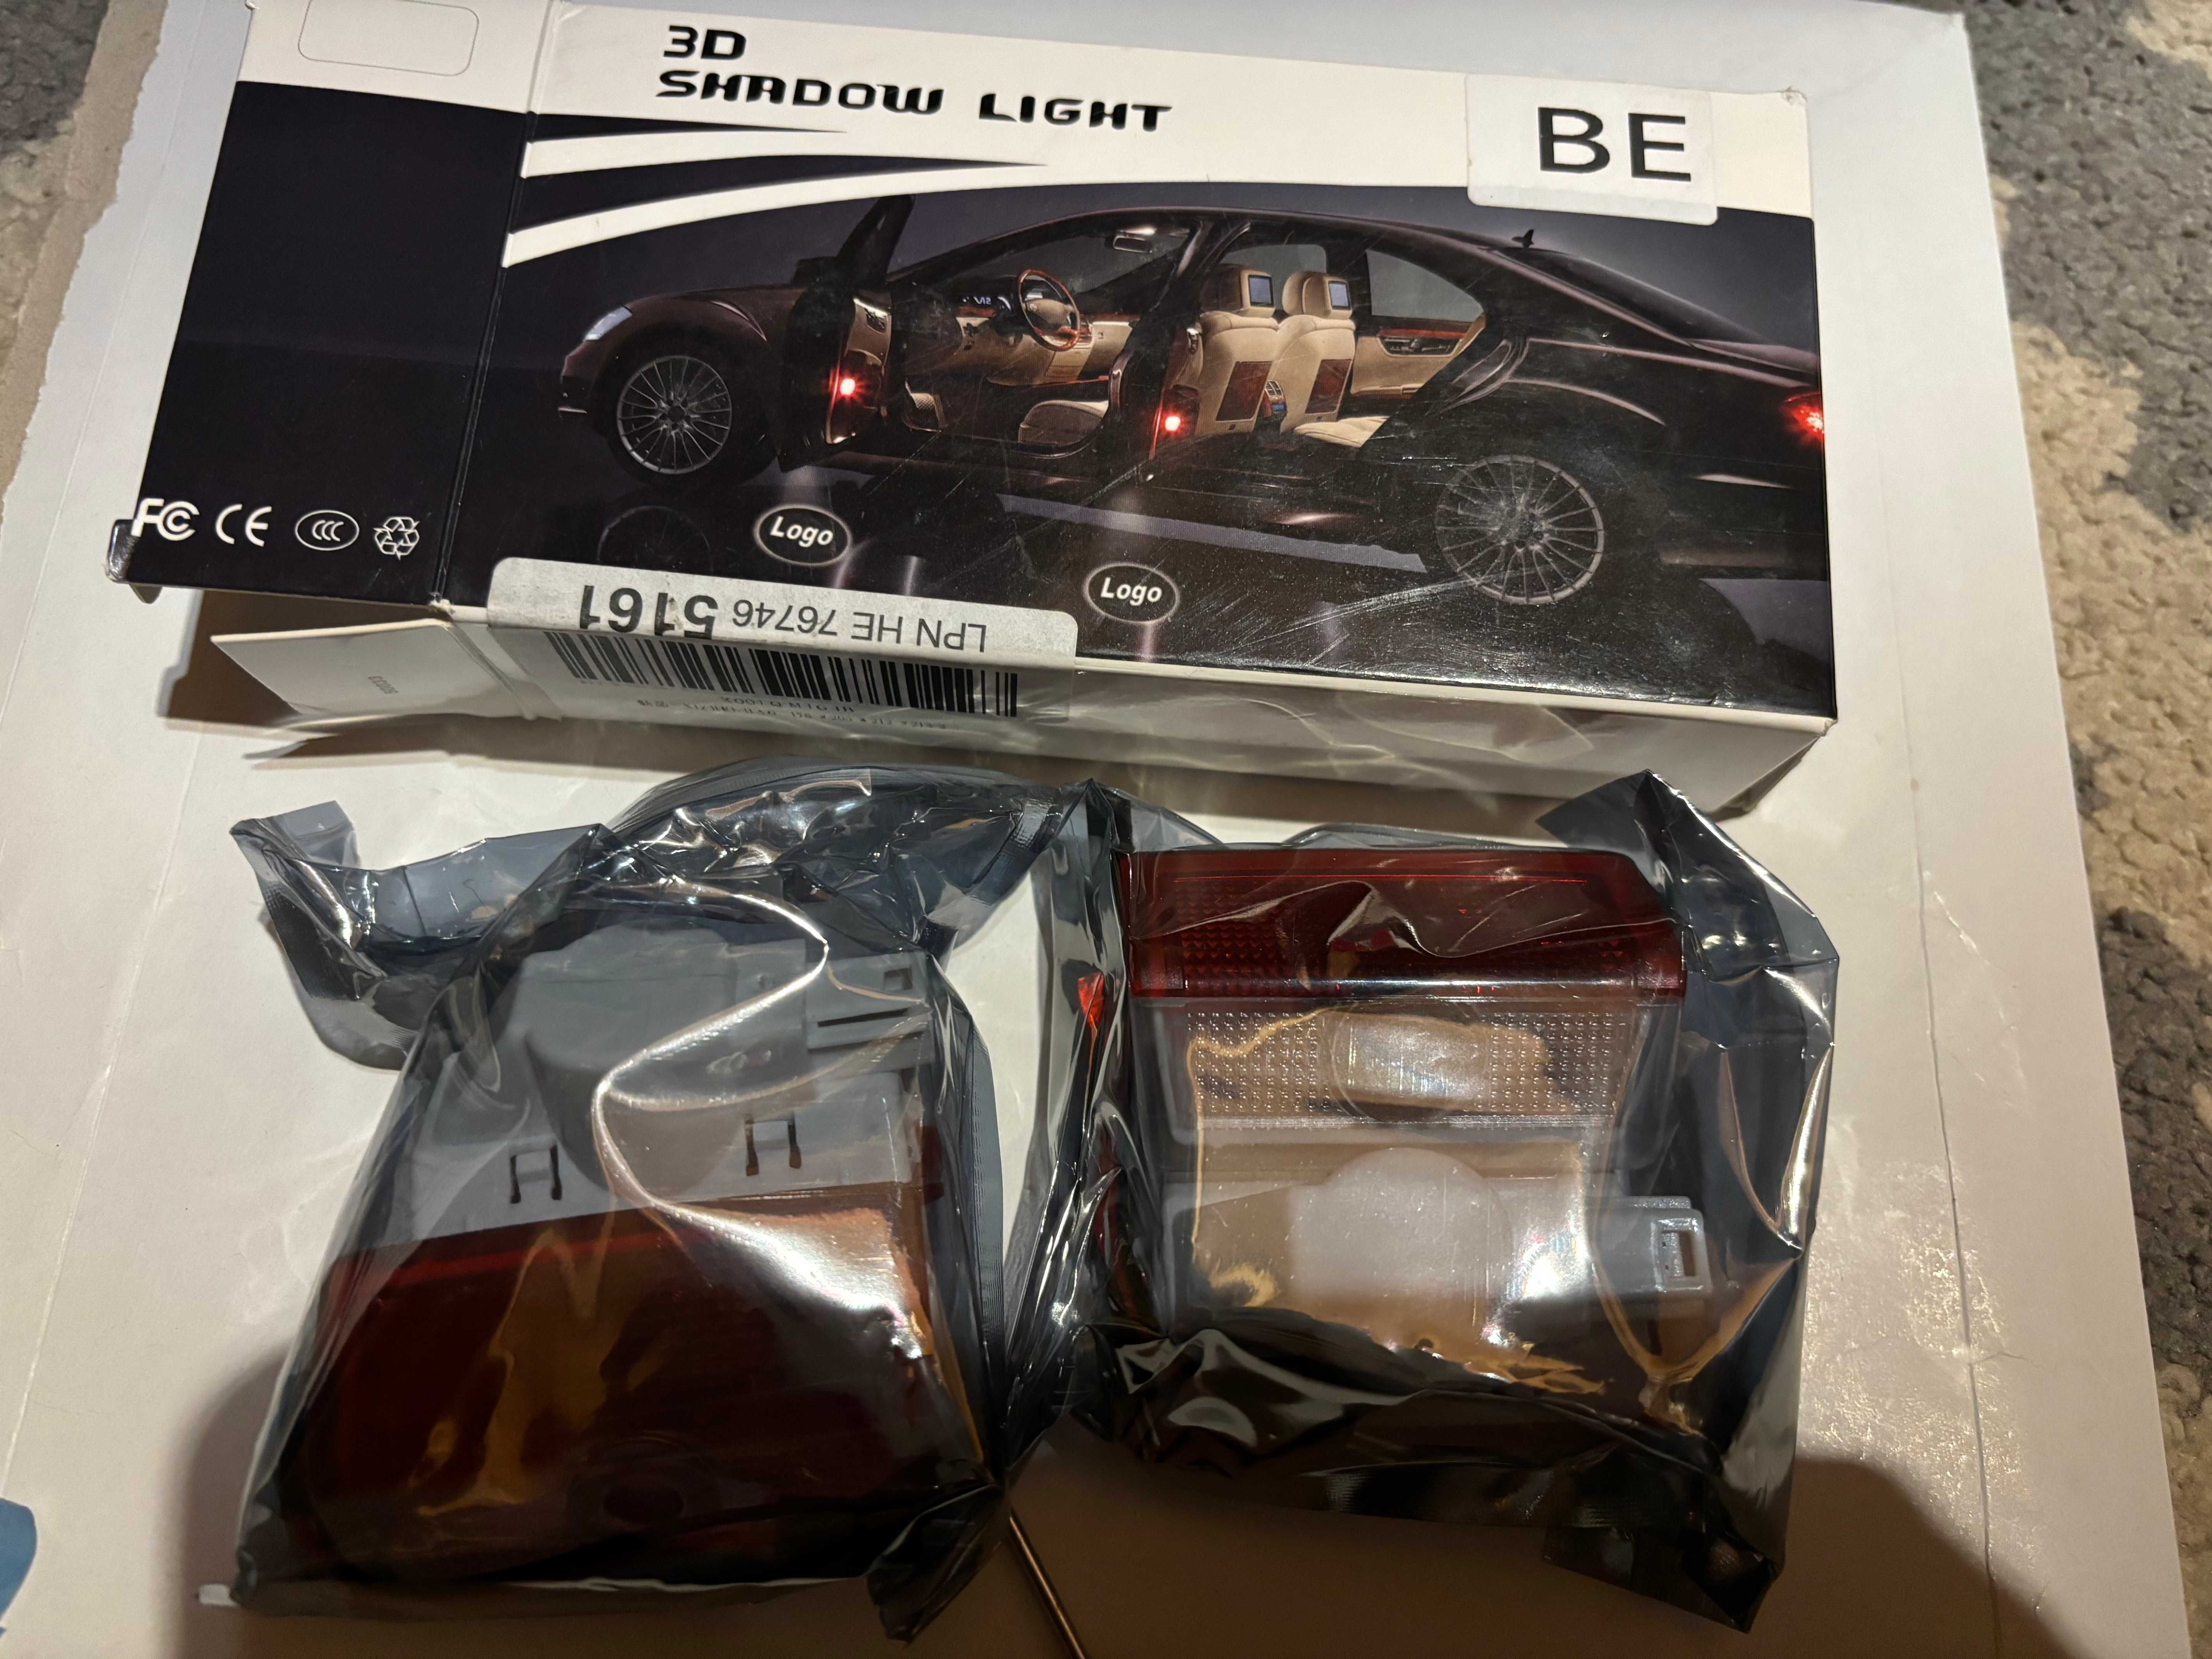 Światła LED Na Drzwi Samochodu Logo, 3D Shadow Light